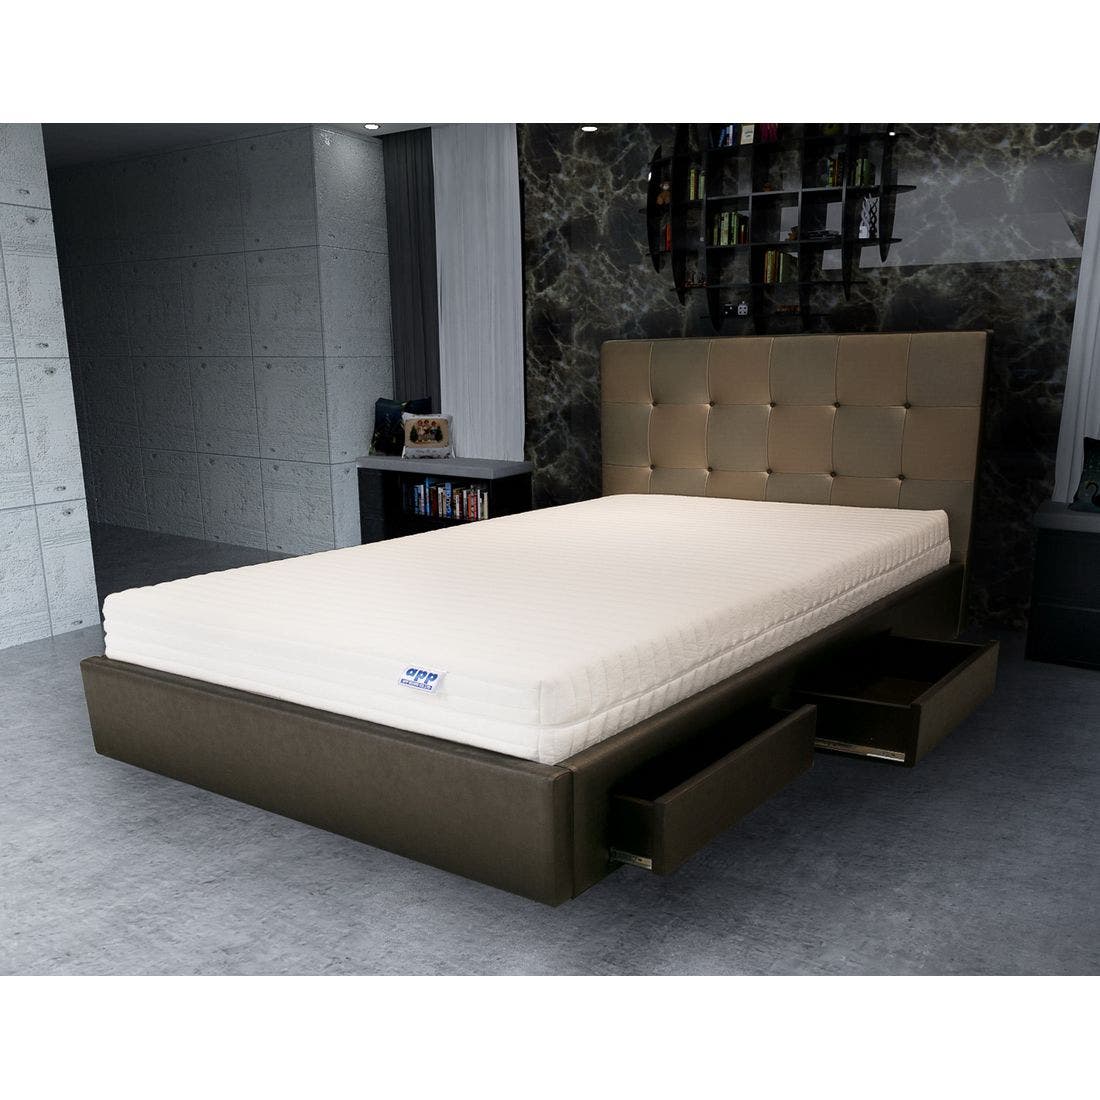 39001627-mattress-bedding-mattresses-latex-mattresses-31